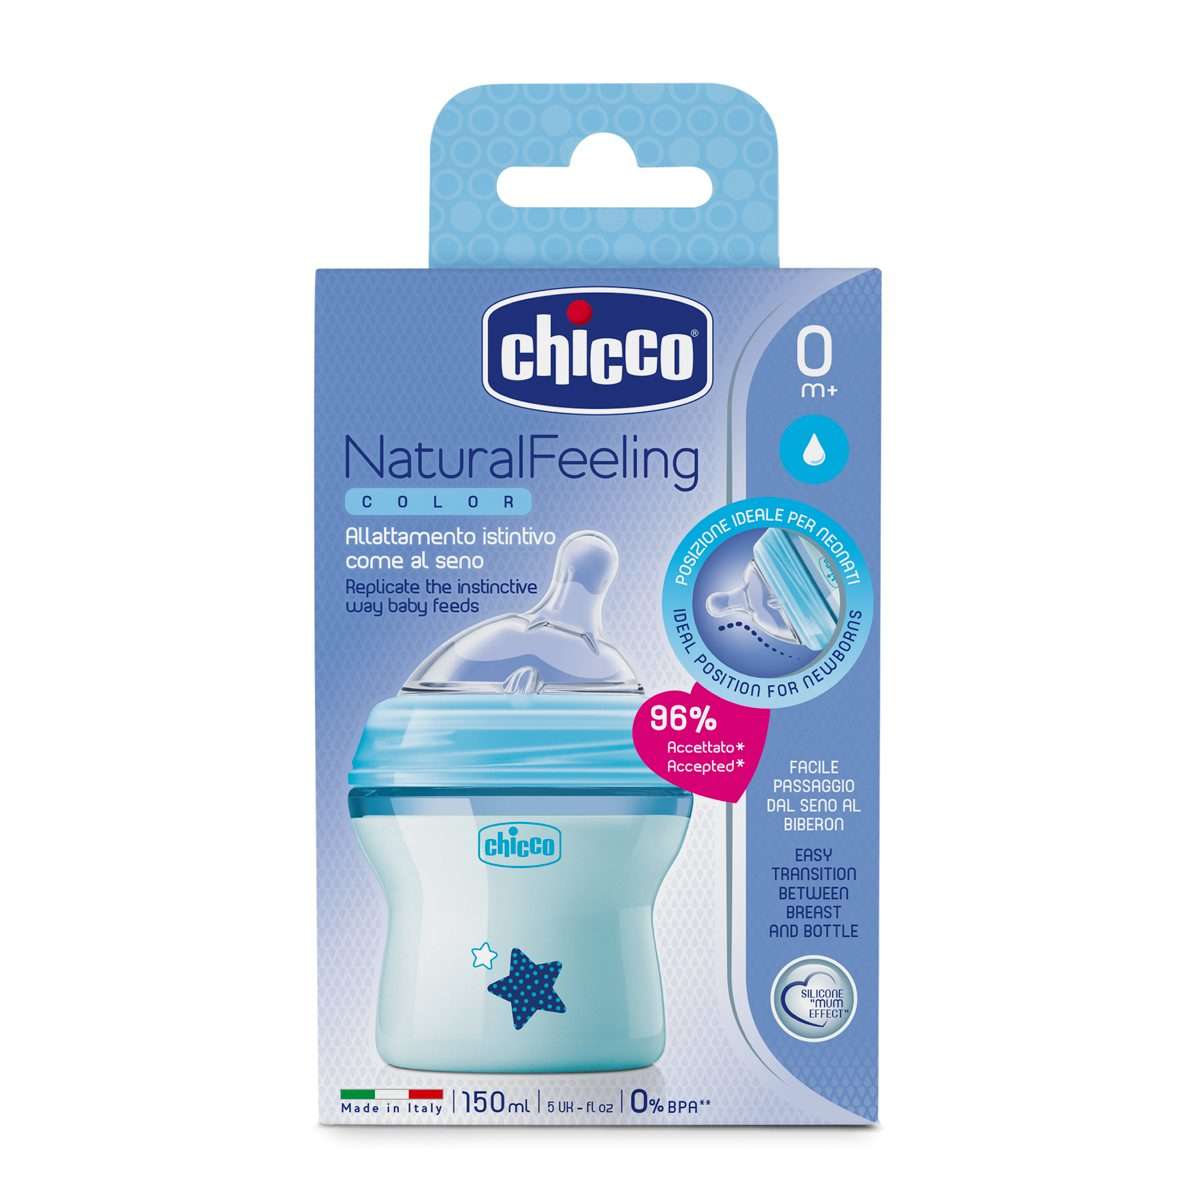 🌟 Productos #chicco, para la higiene de los biberones y